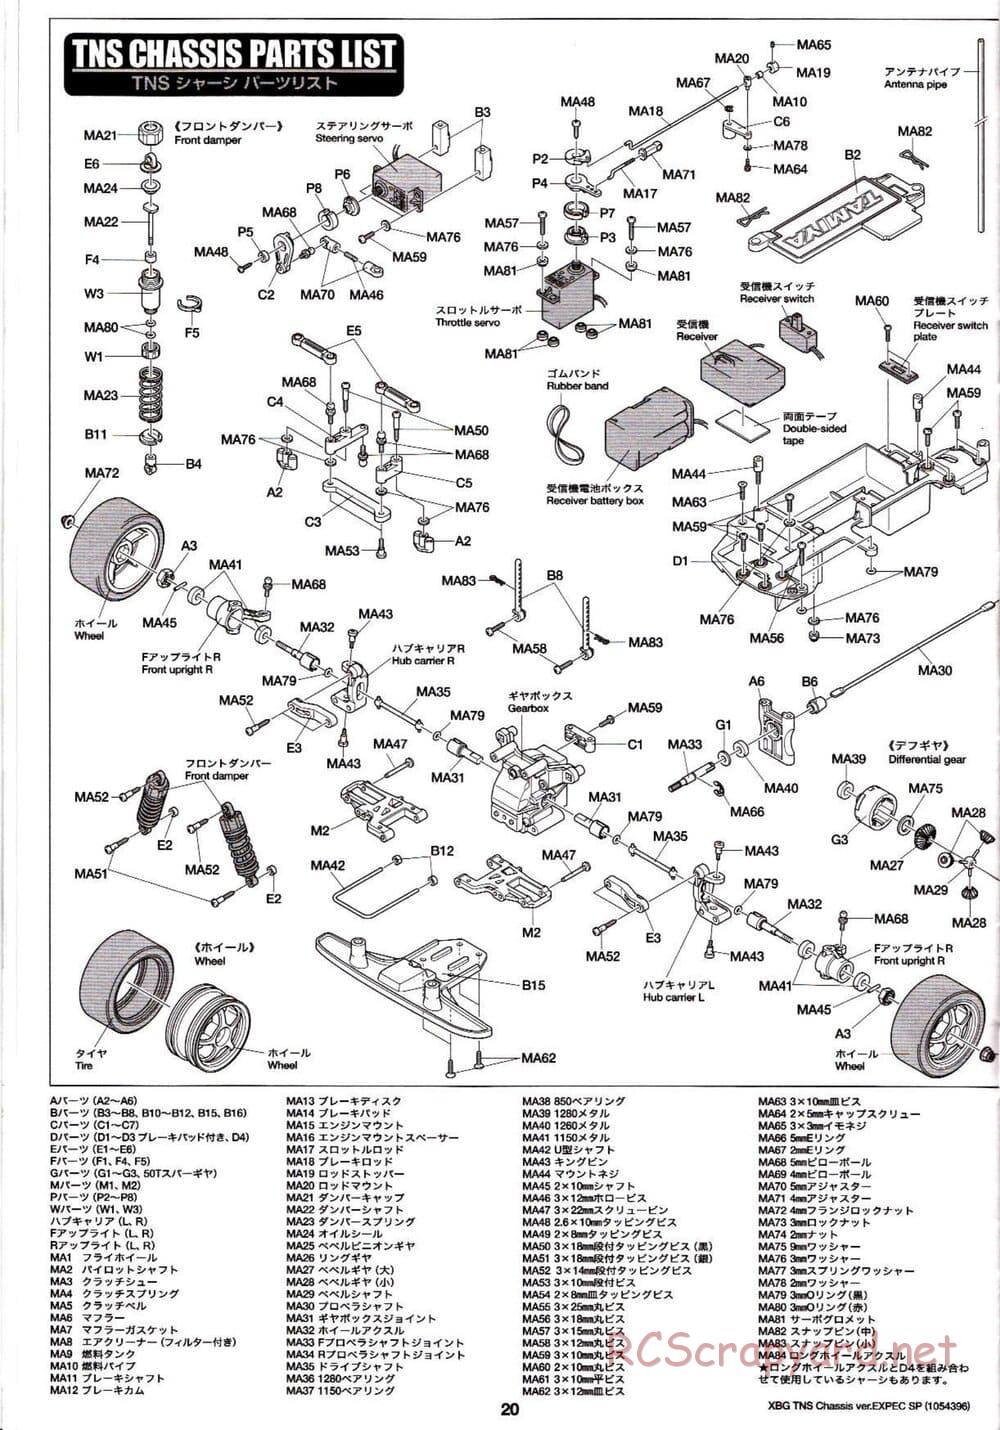 Tamiya - TNS Chassis - Manual - Page 20